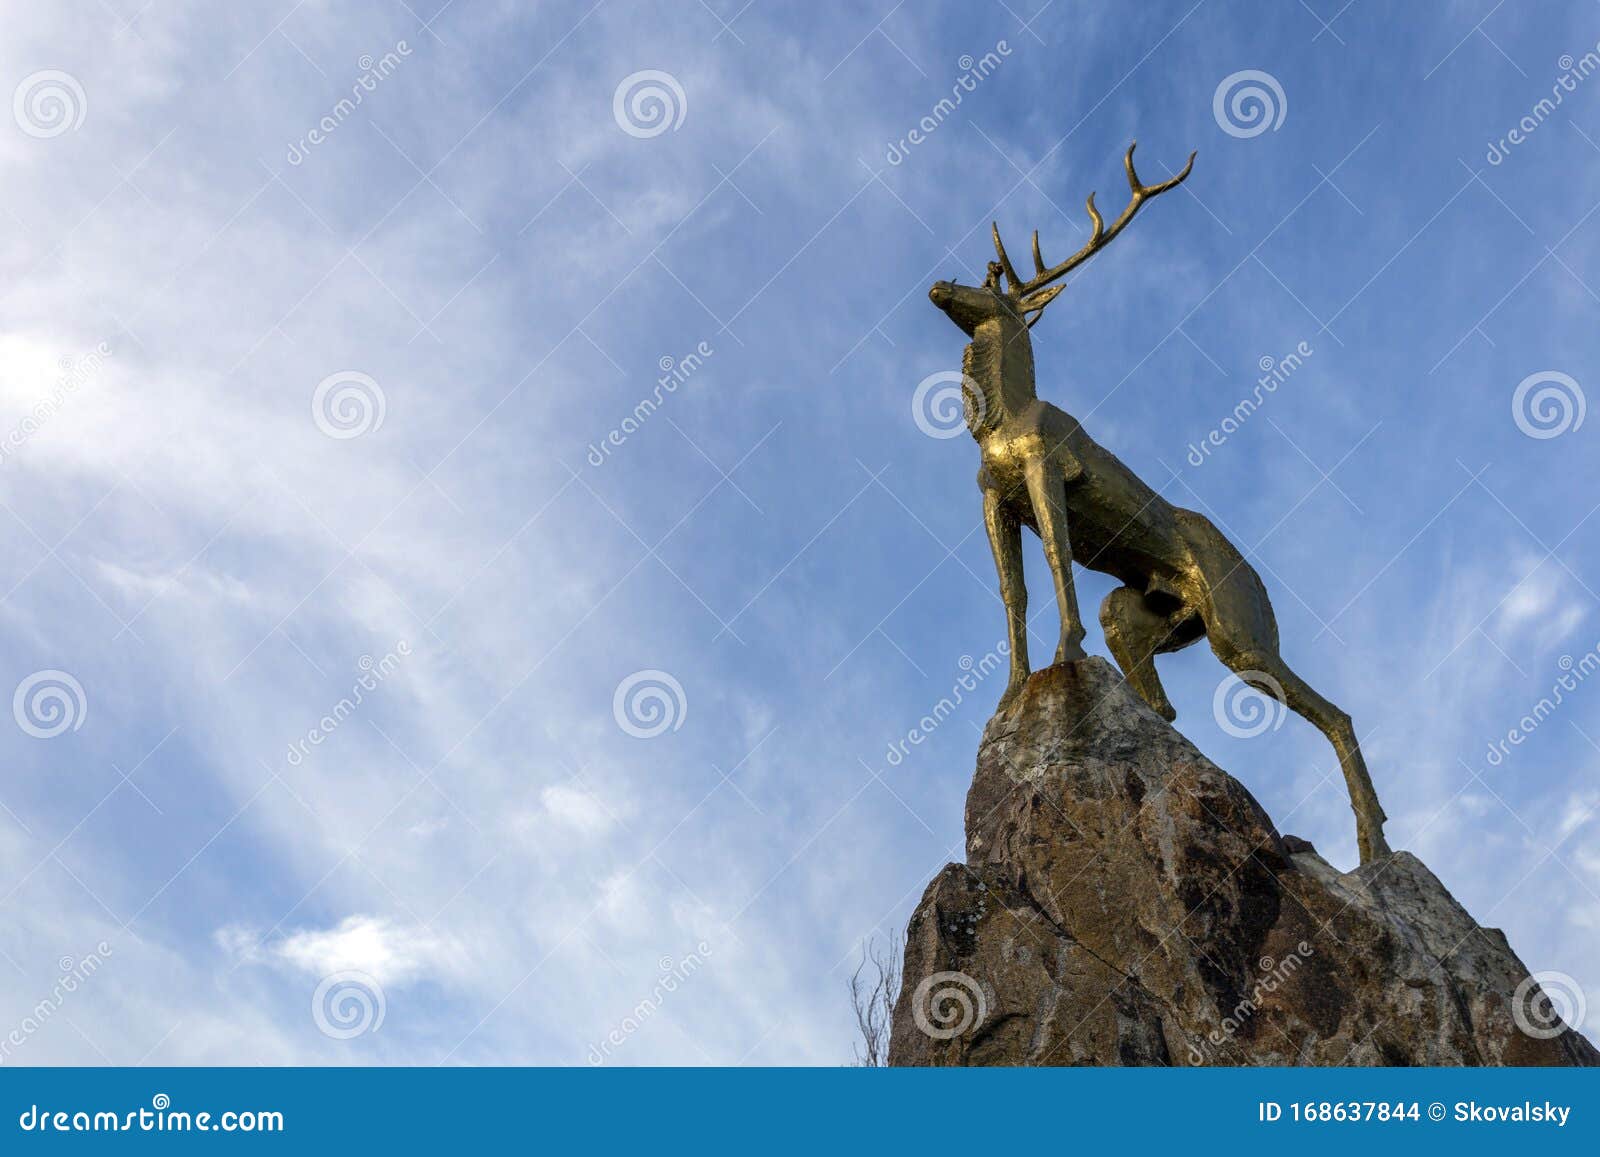 miraculous deer statue in matraballa